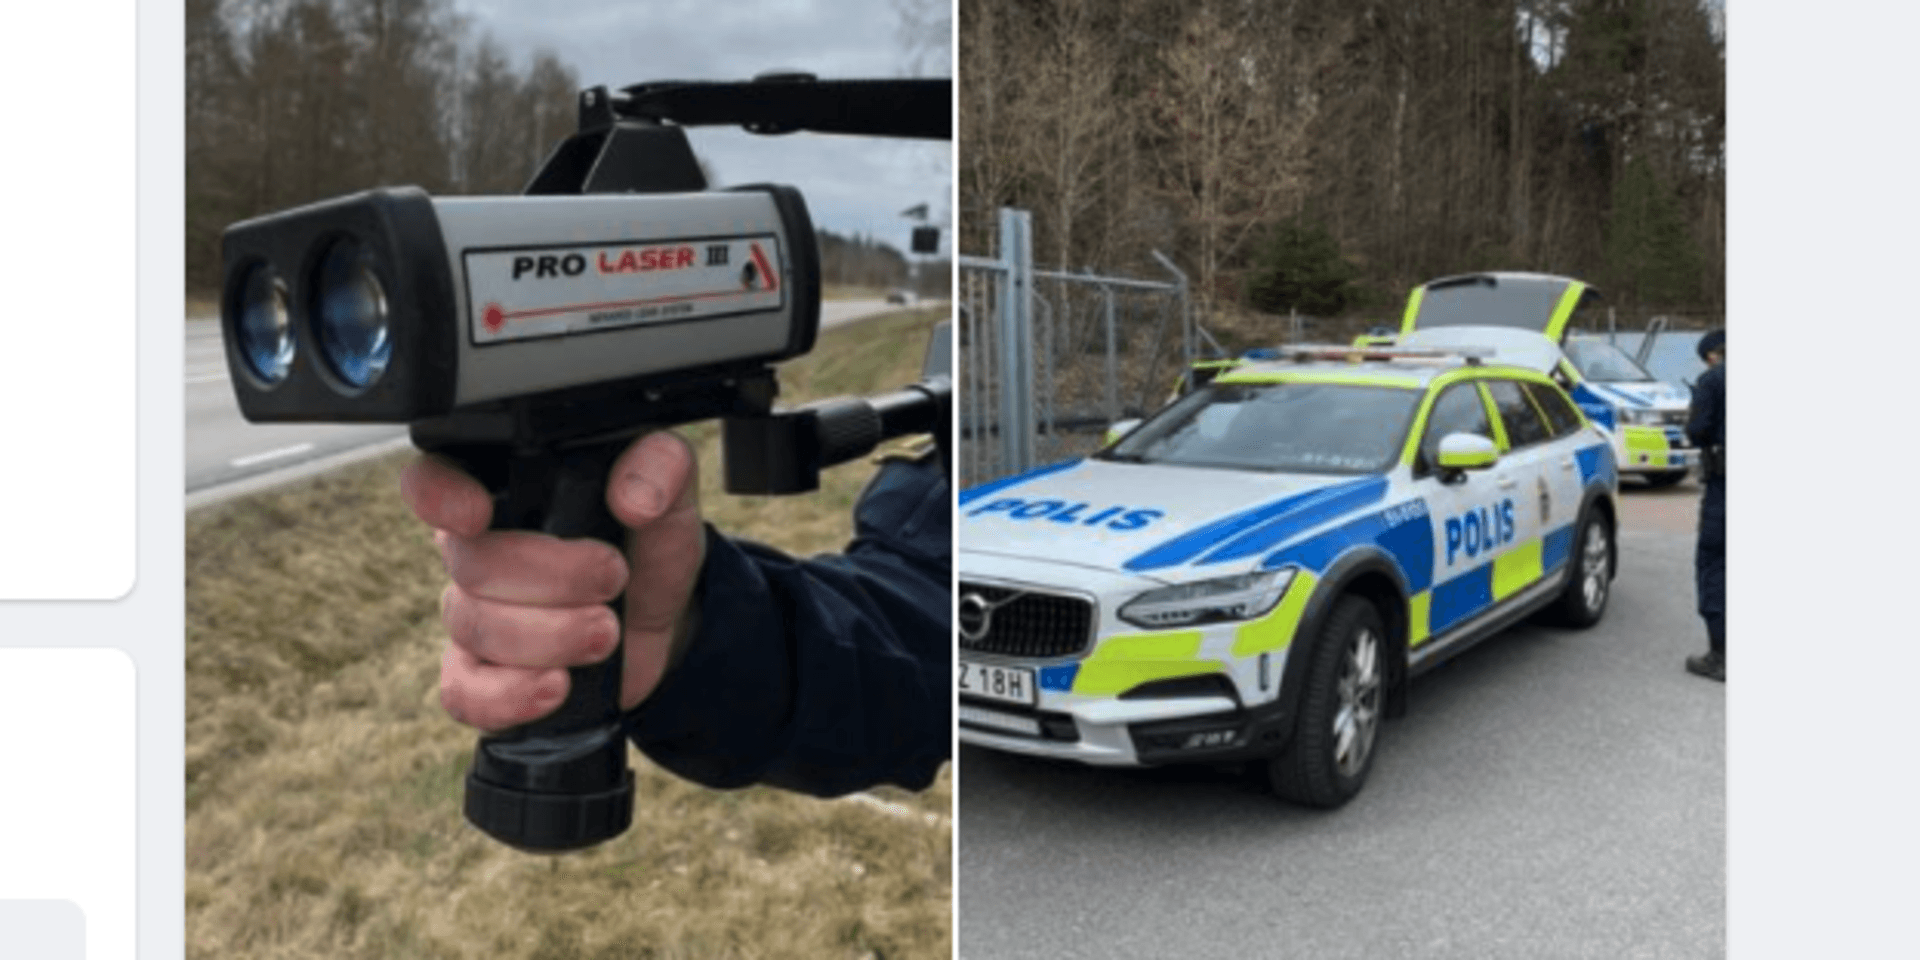 Polisens Facebook-inlägg om hastighetskontrollen på Sparråsvägen fick många kommentarer.